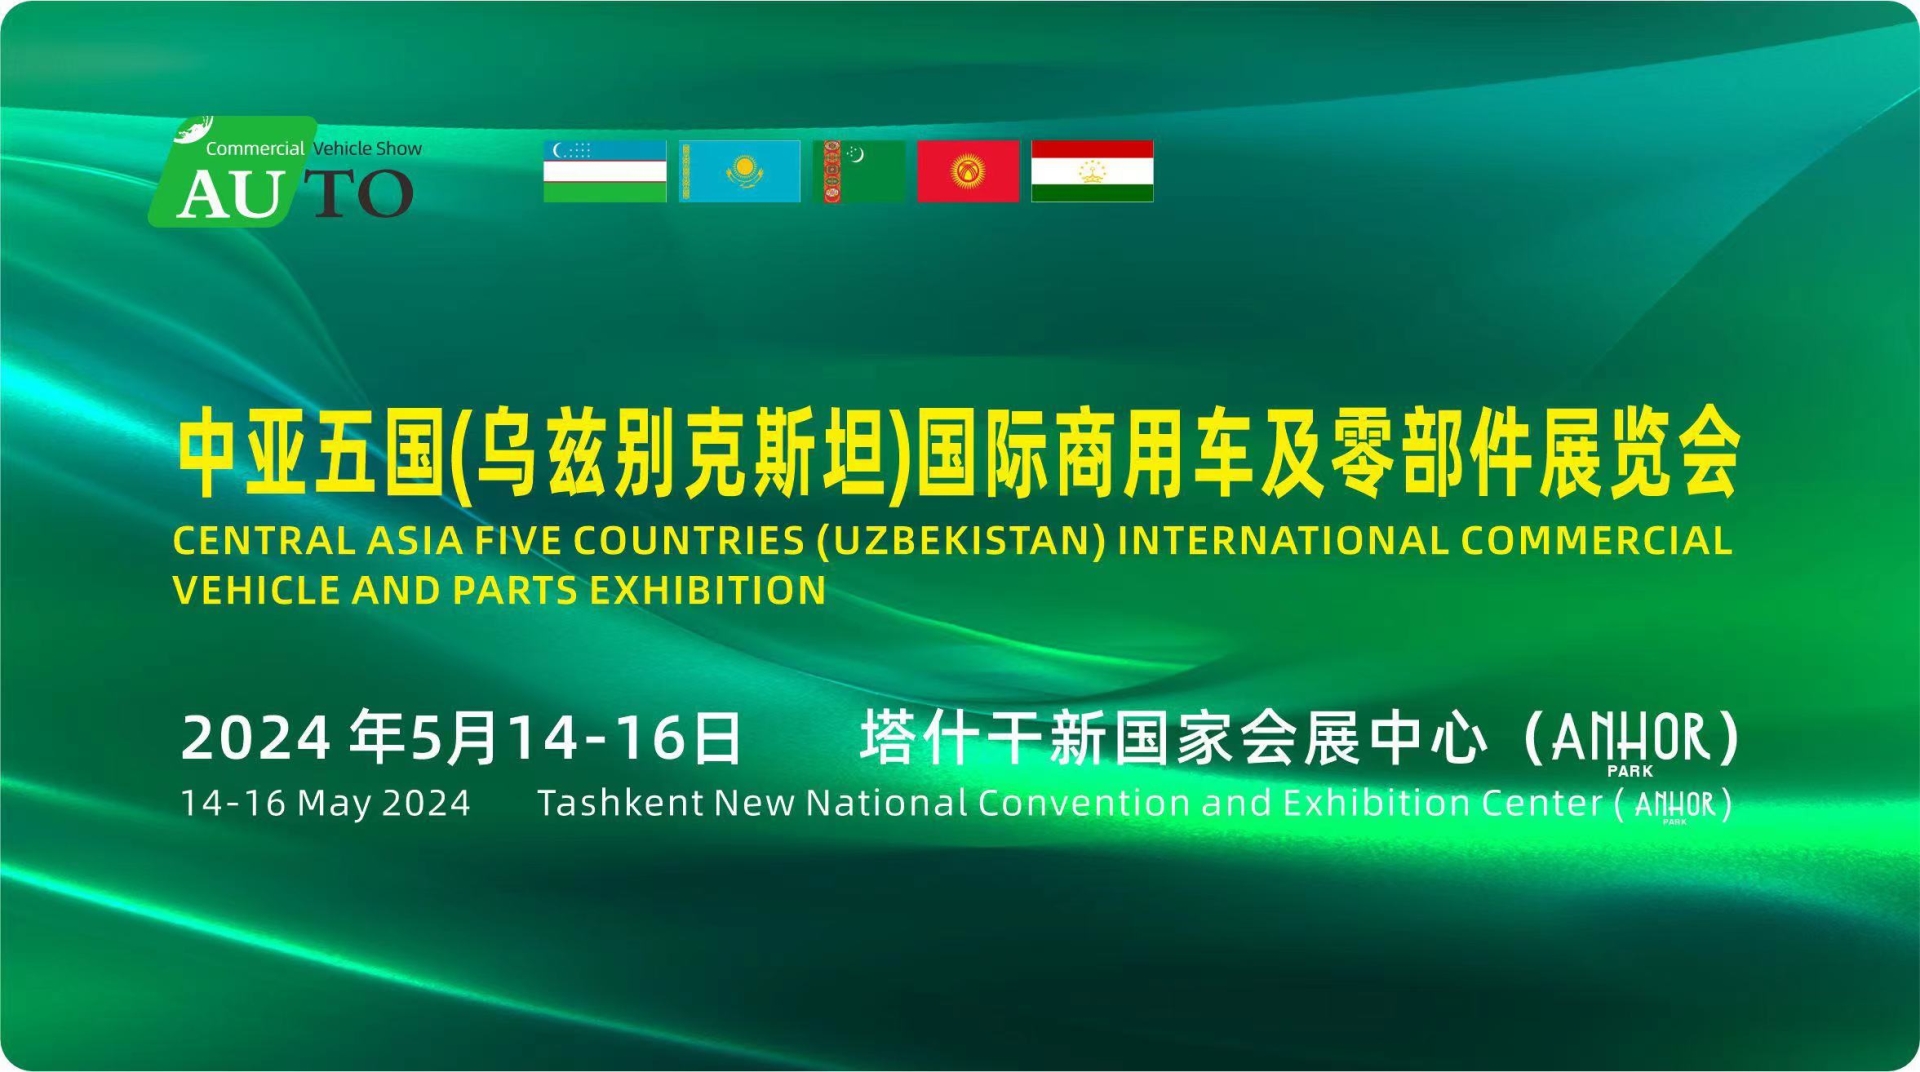 中亚五国(乌兹别克斯坦)国际商用车及零部件展览会